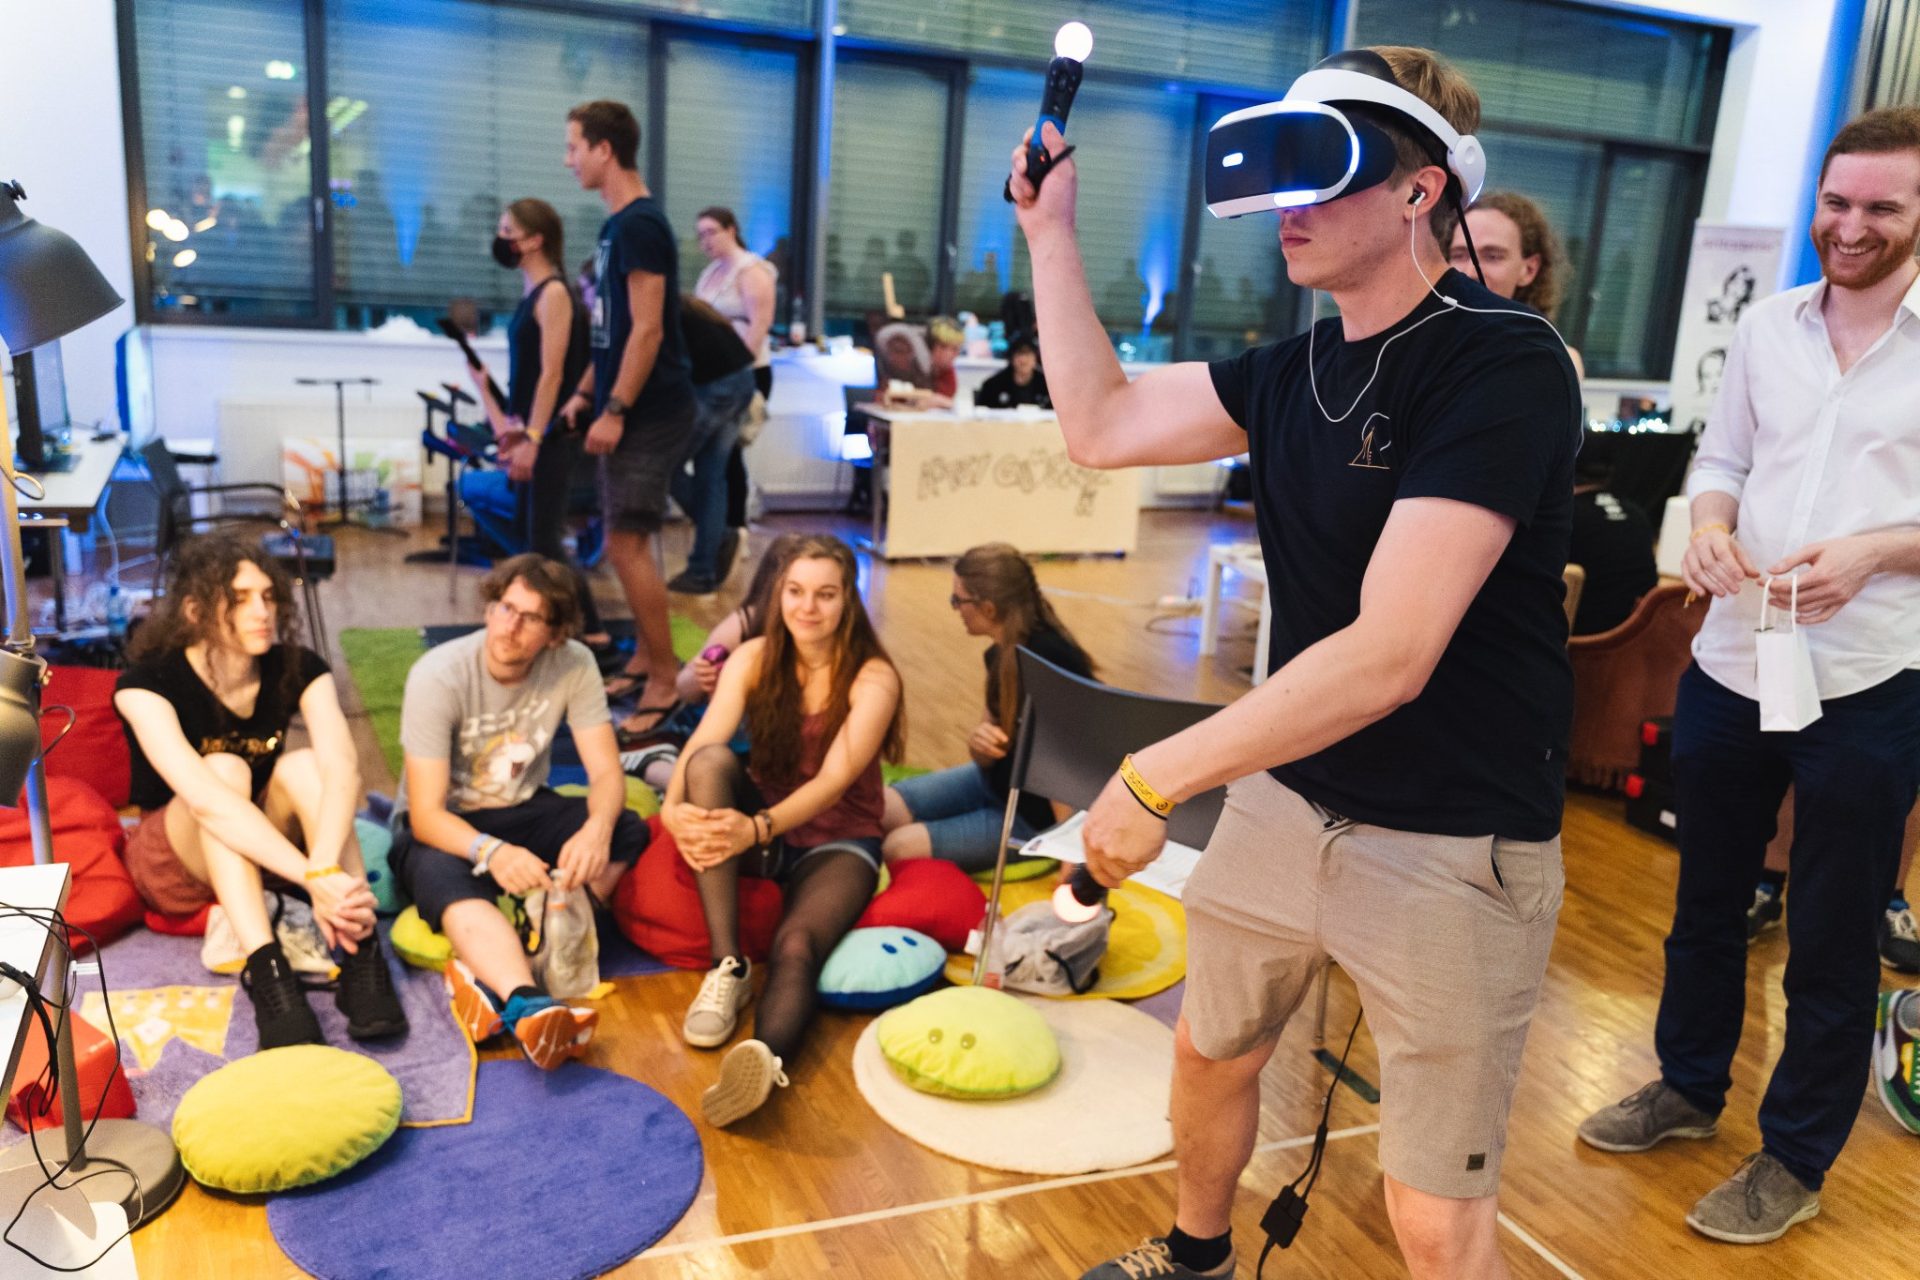 Ein Man beim Beat Saber spielen mit VR Headset und Motion Controllern, vor Publikum das auf Kissen sitzt.